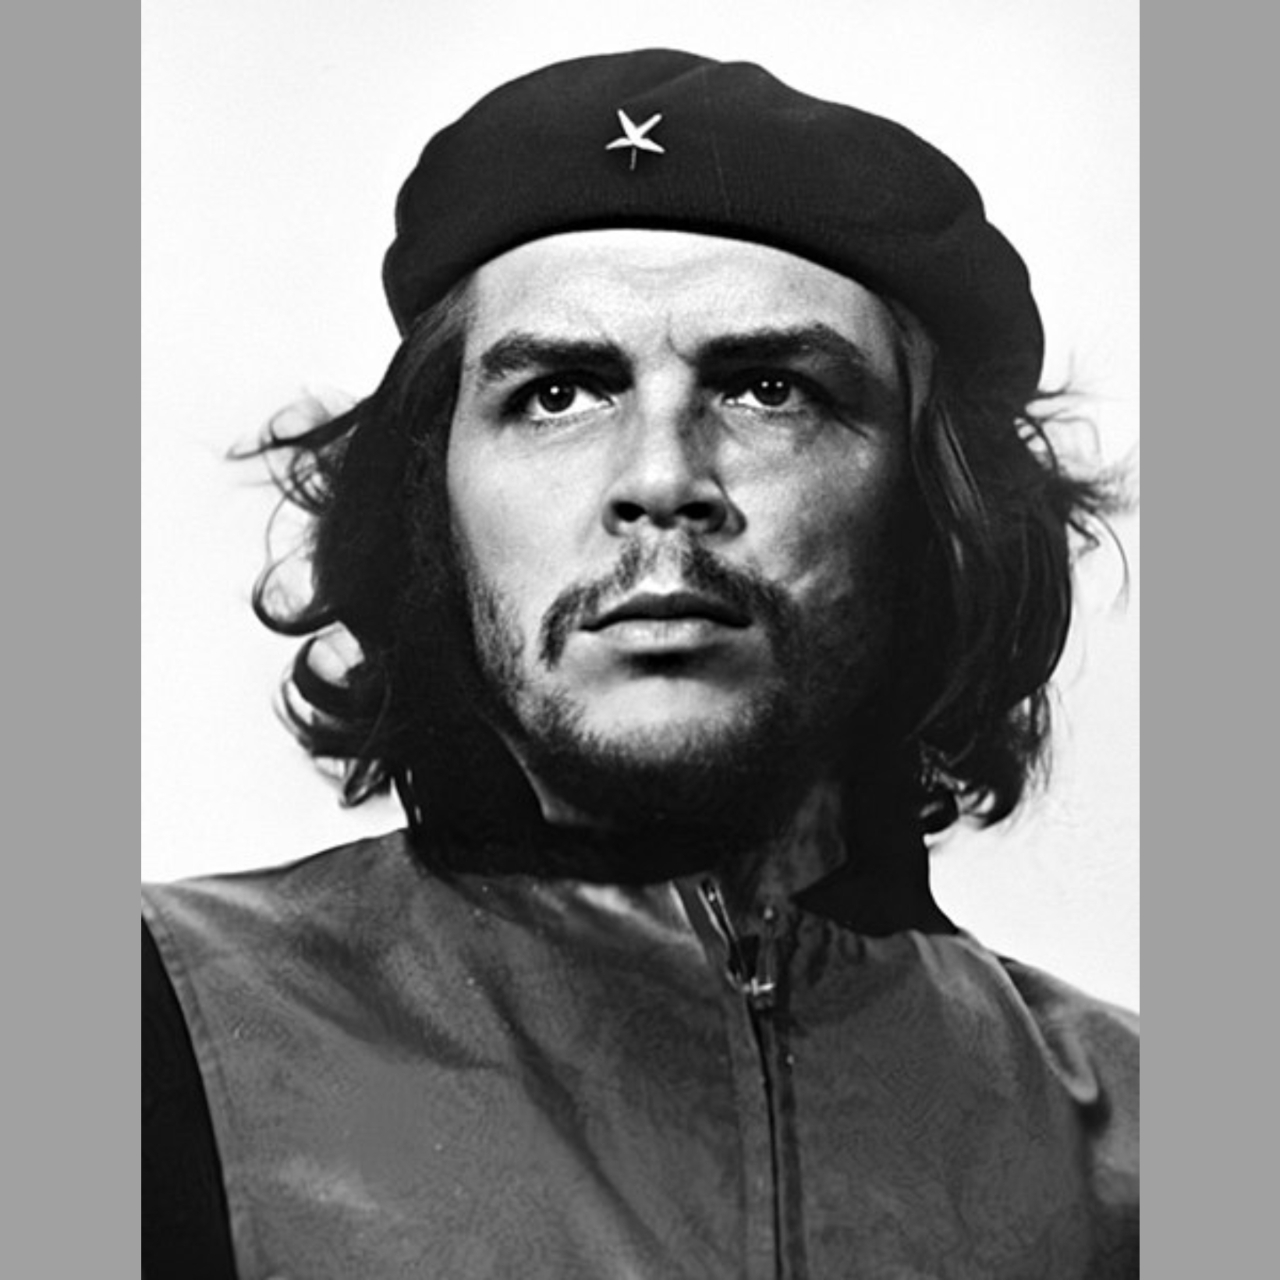 Fotografia 'Guerrillero Heroico' de Alberto Korda, retratando Che Guevara